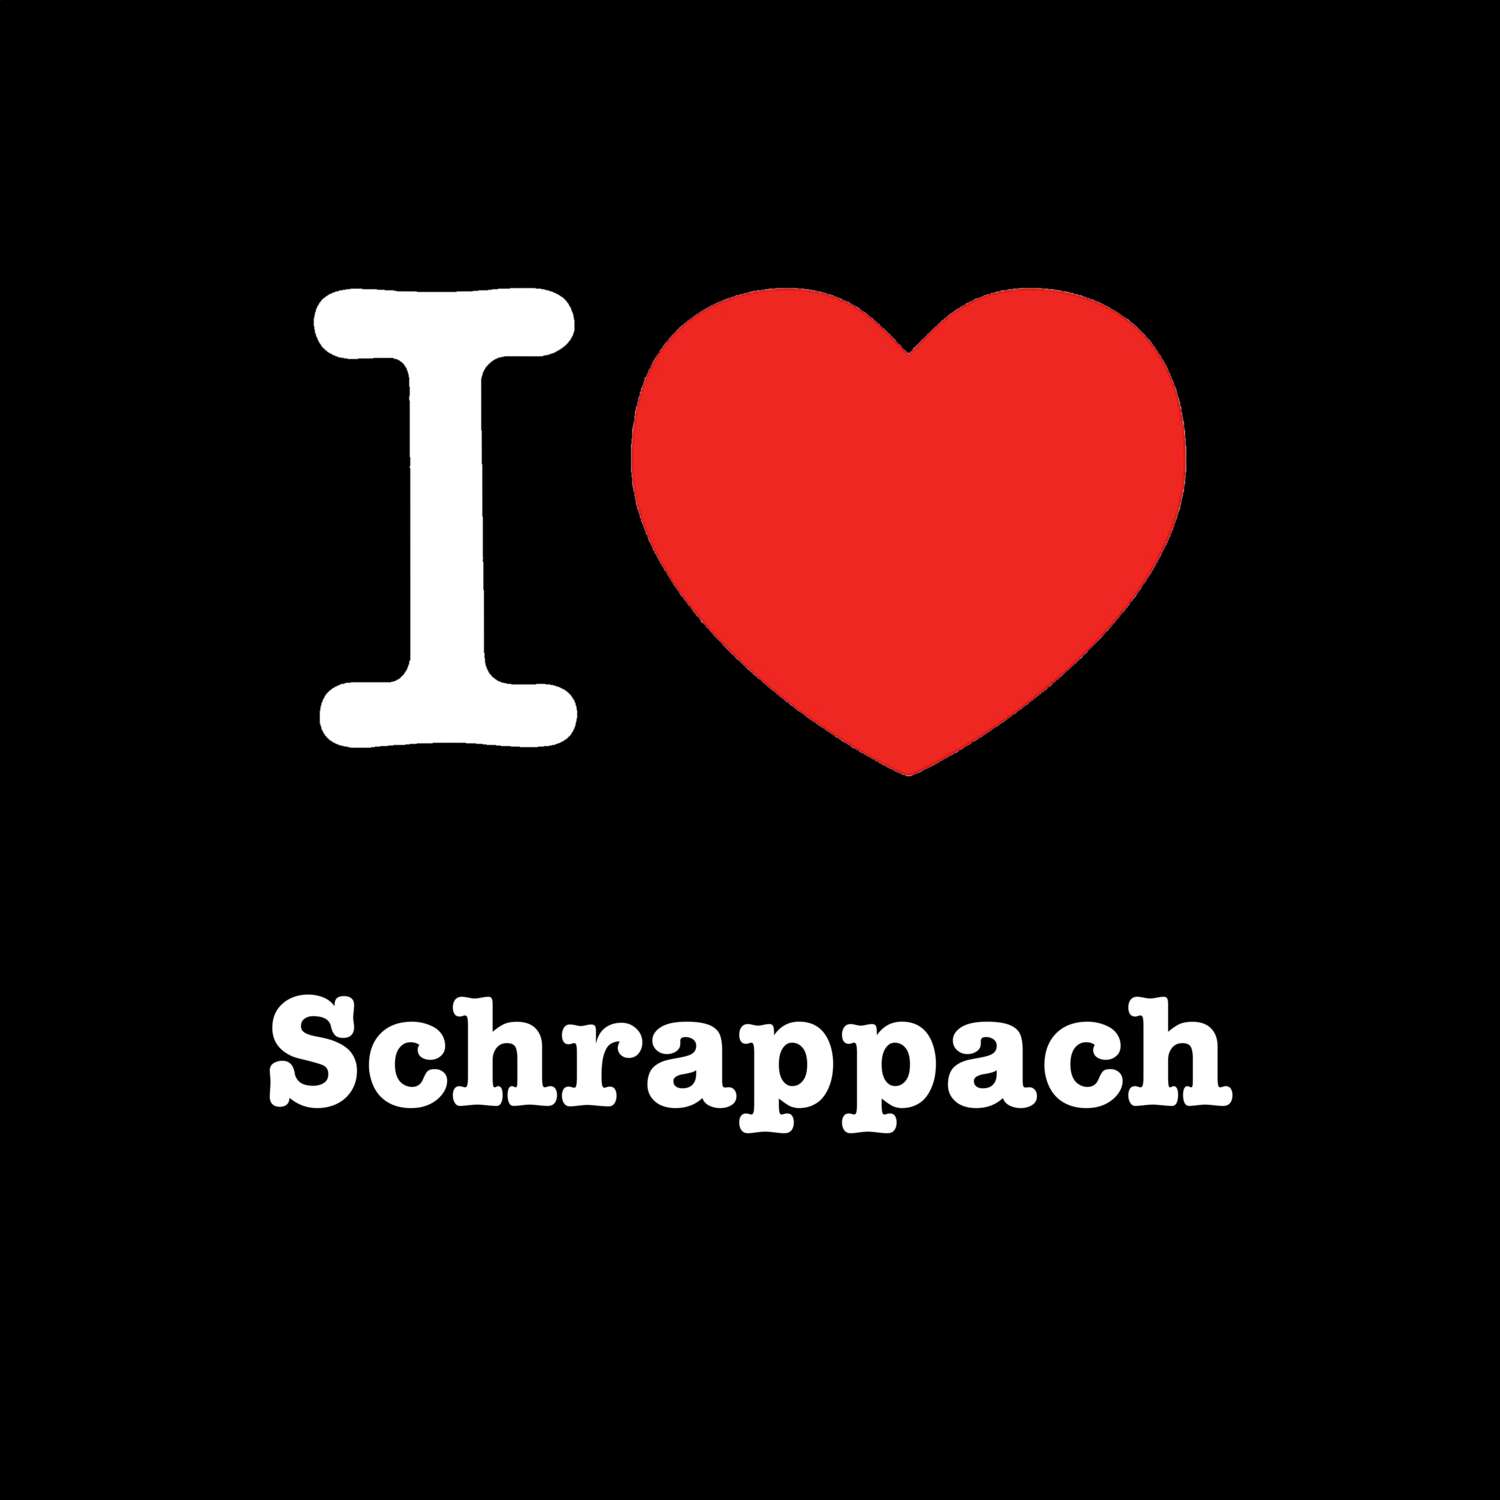 Schrappach T-Shirt »I love«